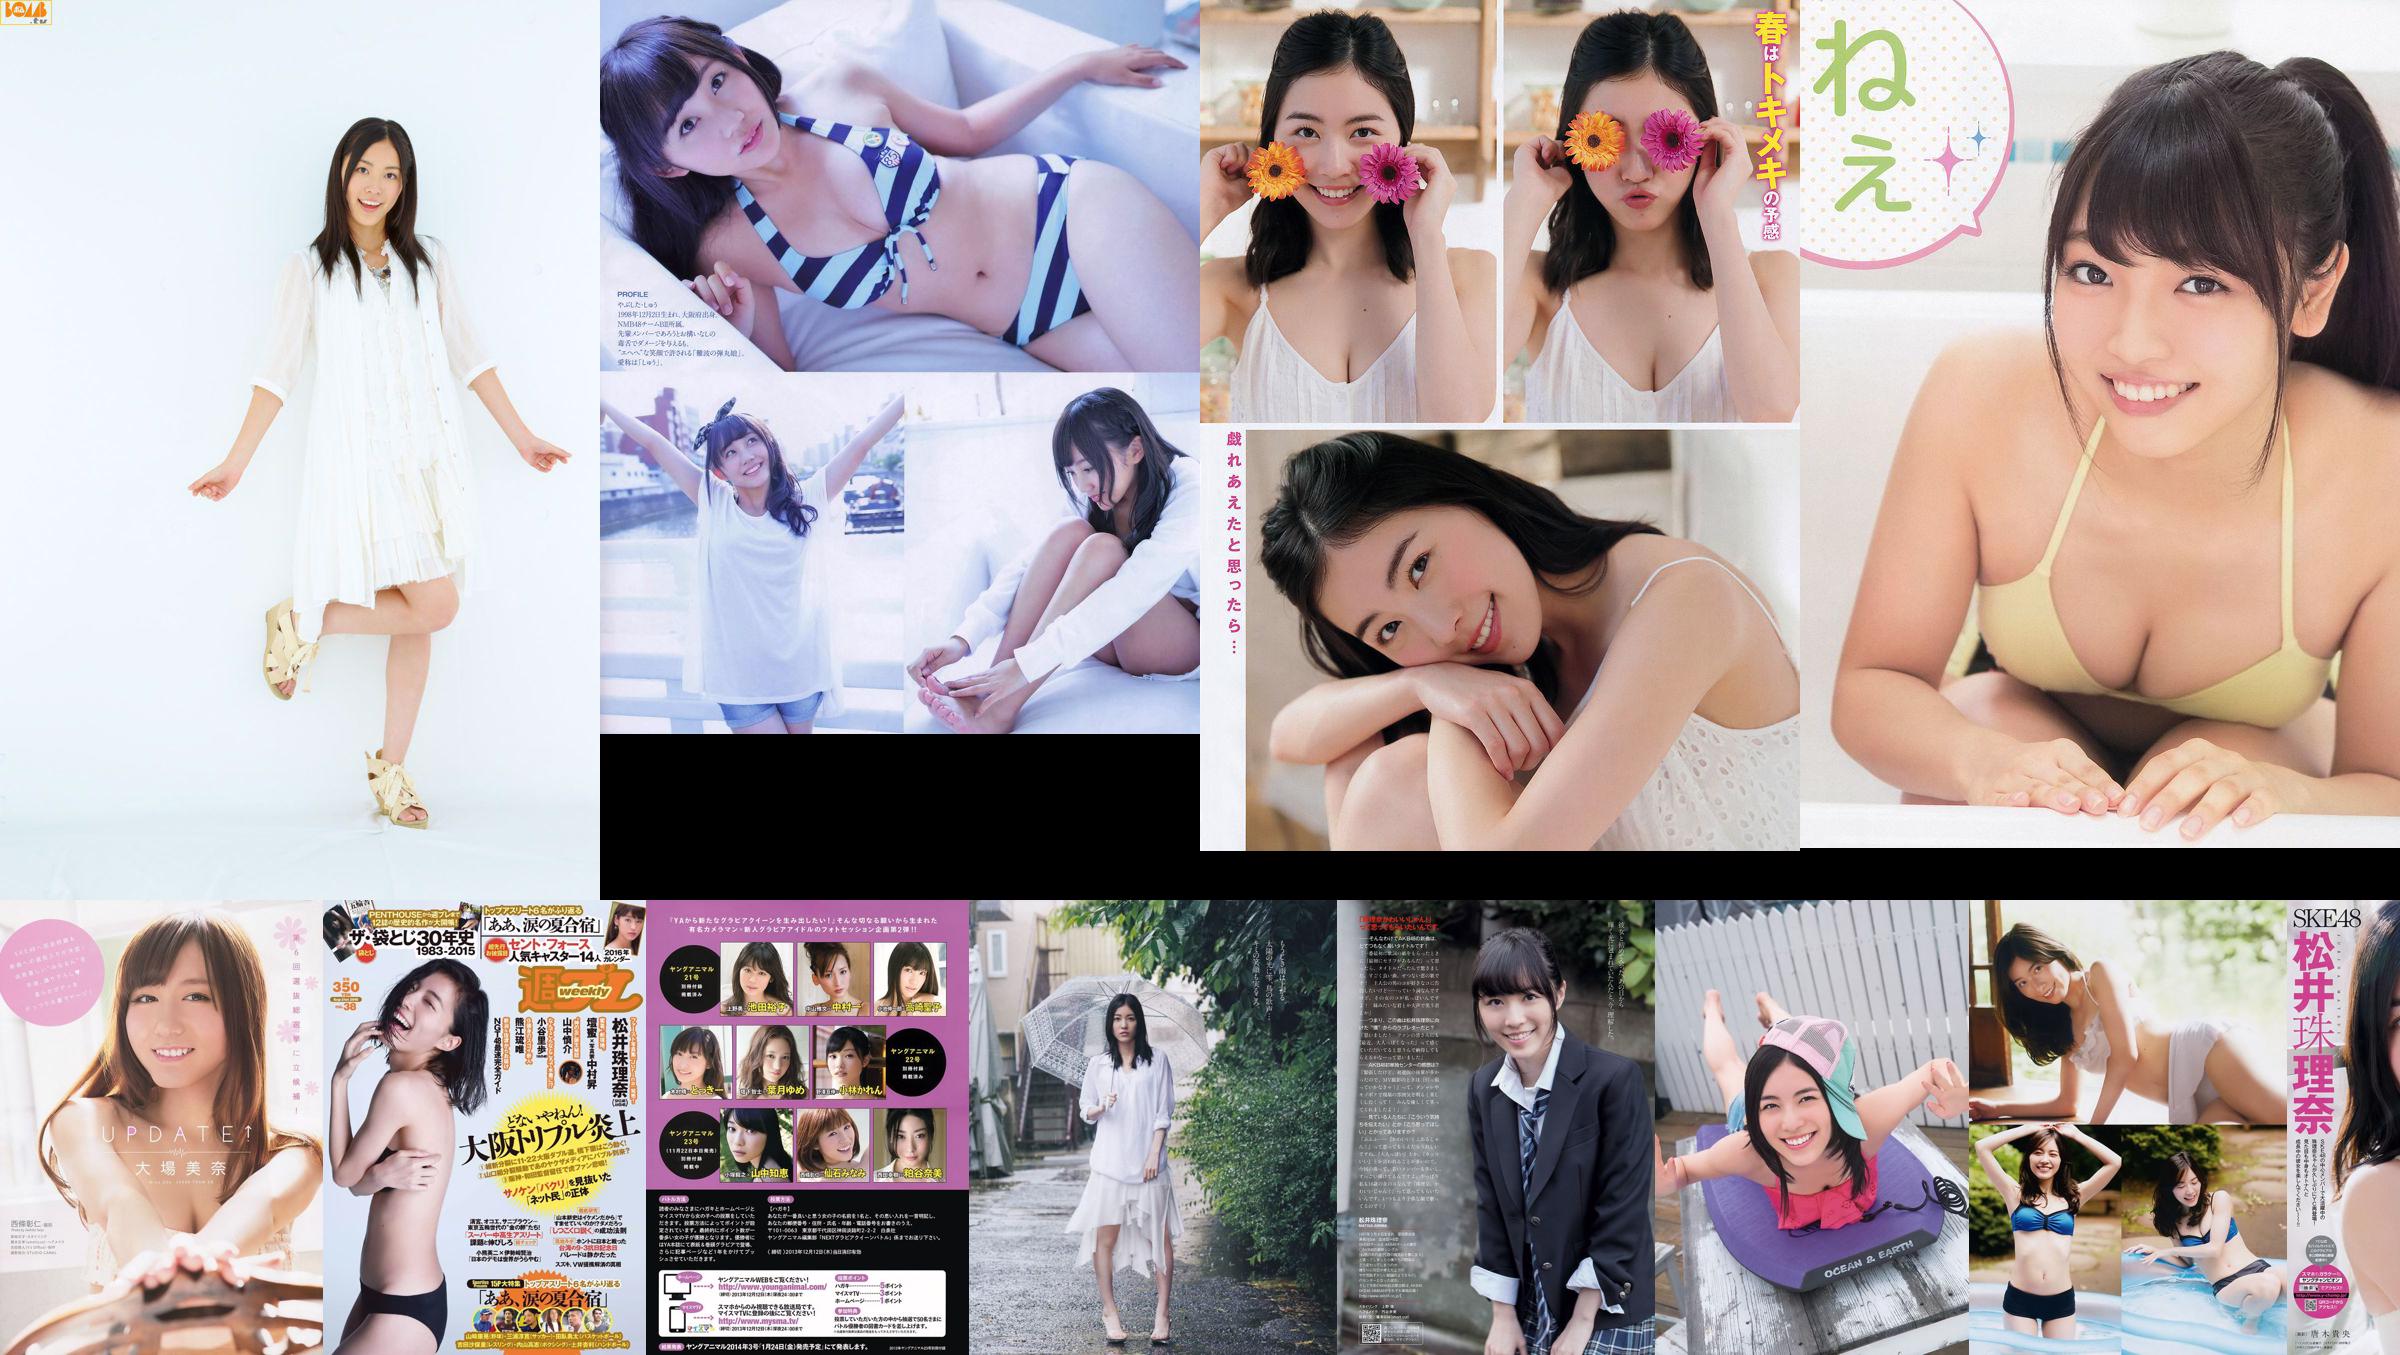 [FLASH] Jurina Matsui Manami Hashimoto Mariko Seyama Akane Takayanagi Mana Sakura 2015.10.13 Foto Moshi No.833c0a Halaman 12